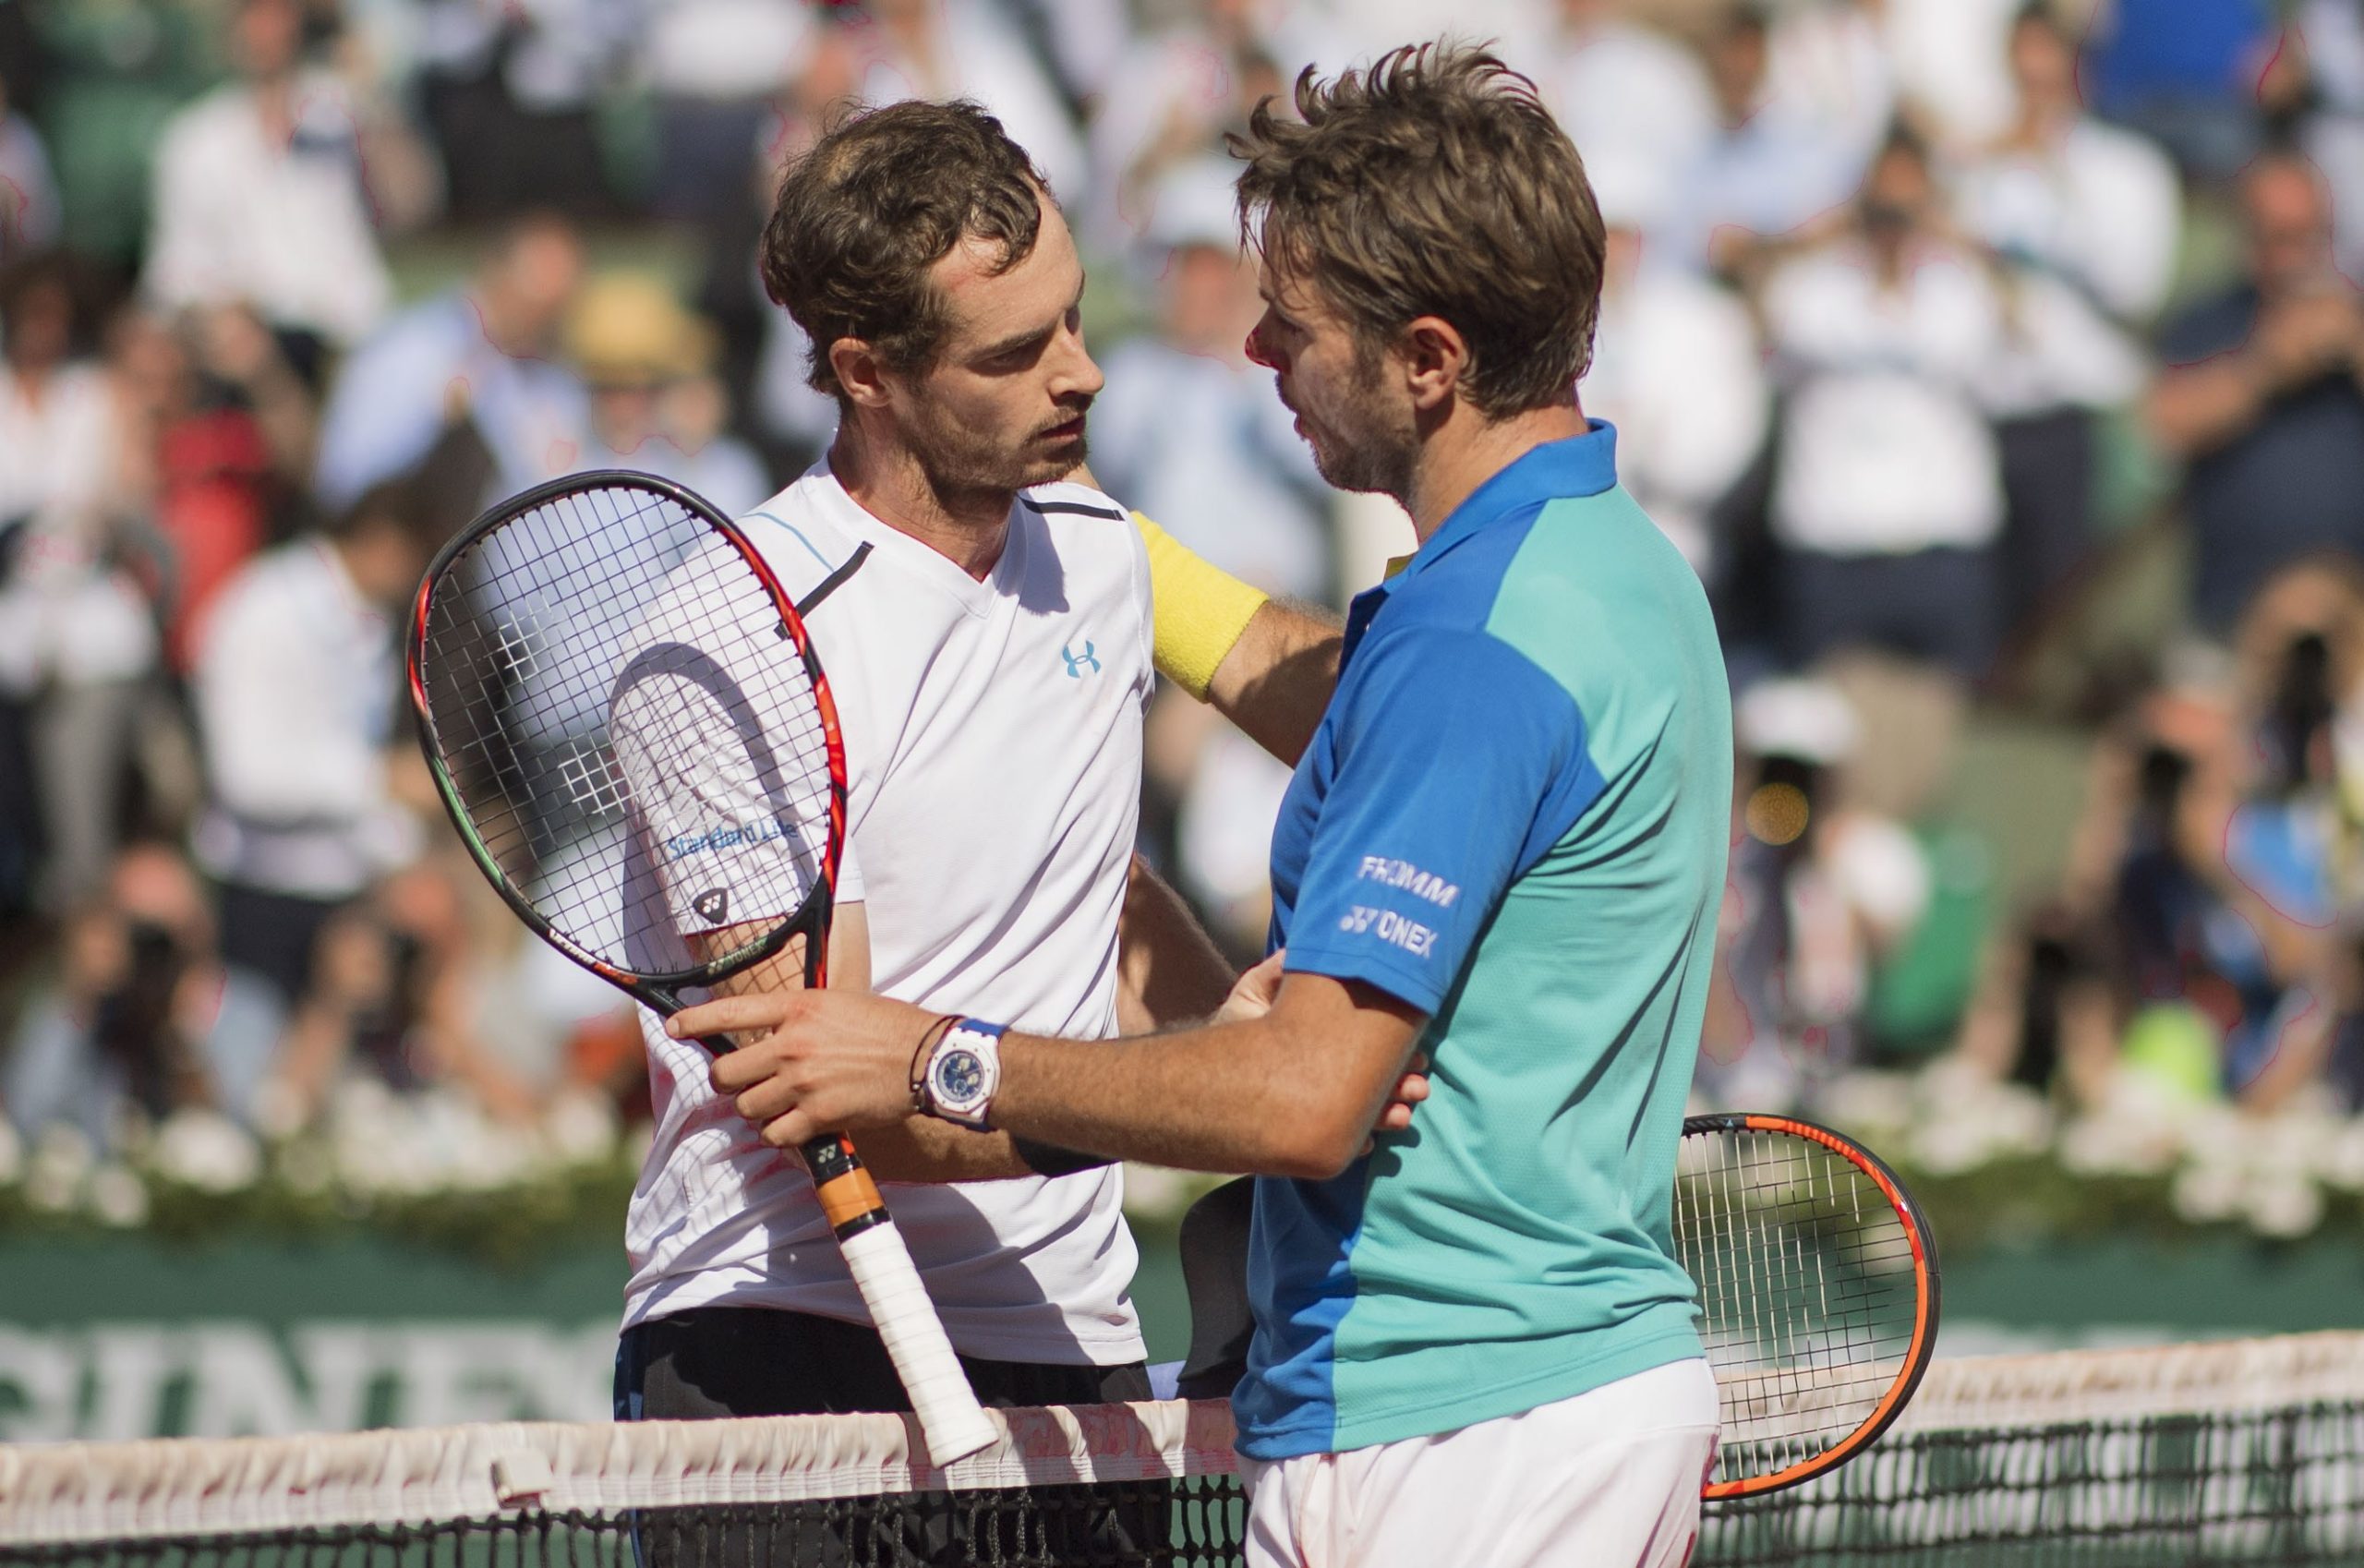 Esta será la cuarta vez que Murray y Wawrinka se enfrenten en Roland Garros, incluyendo las semifinales en 2016 y 2017